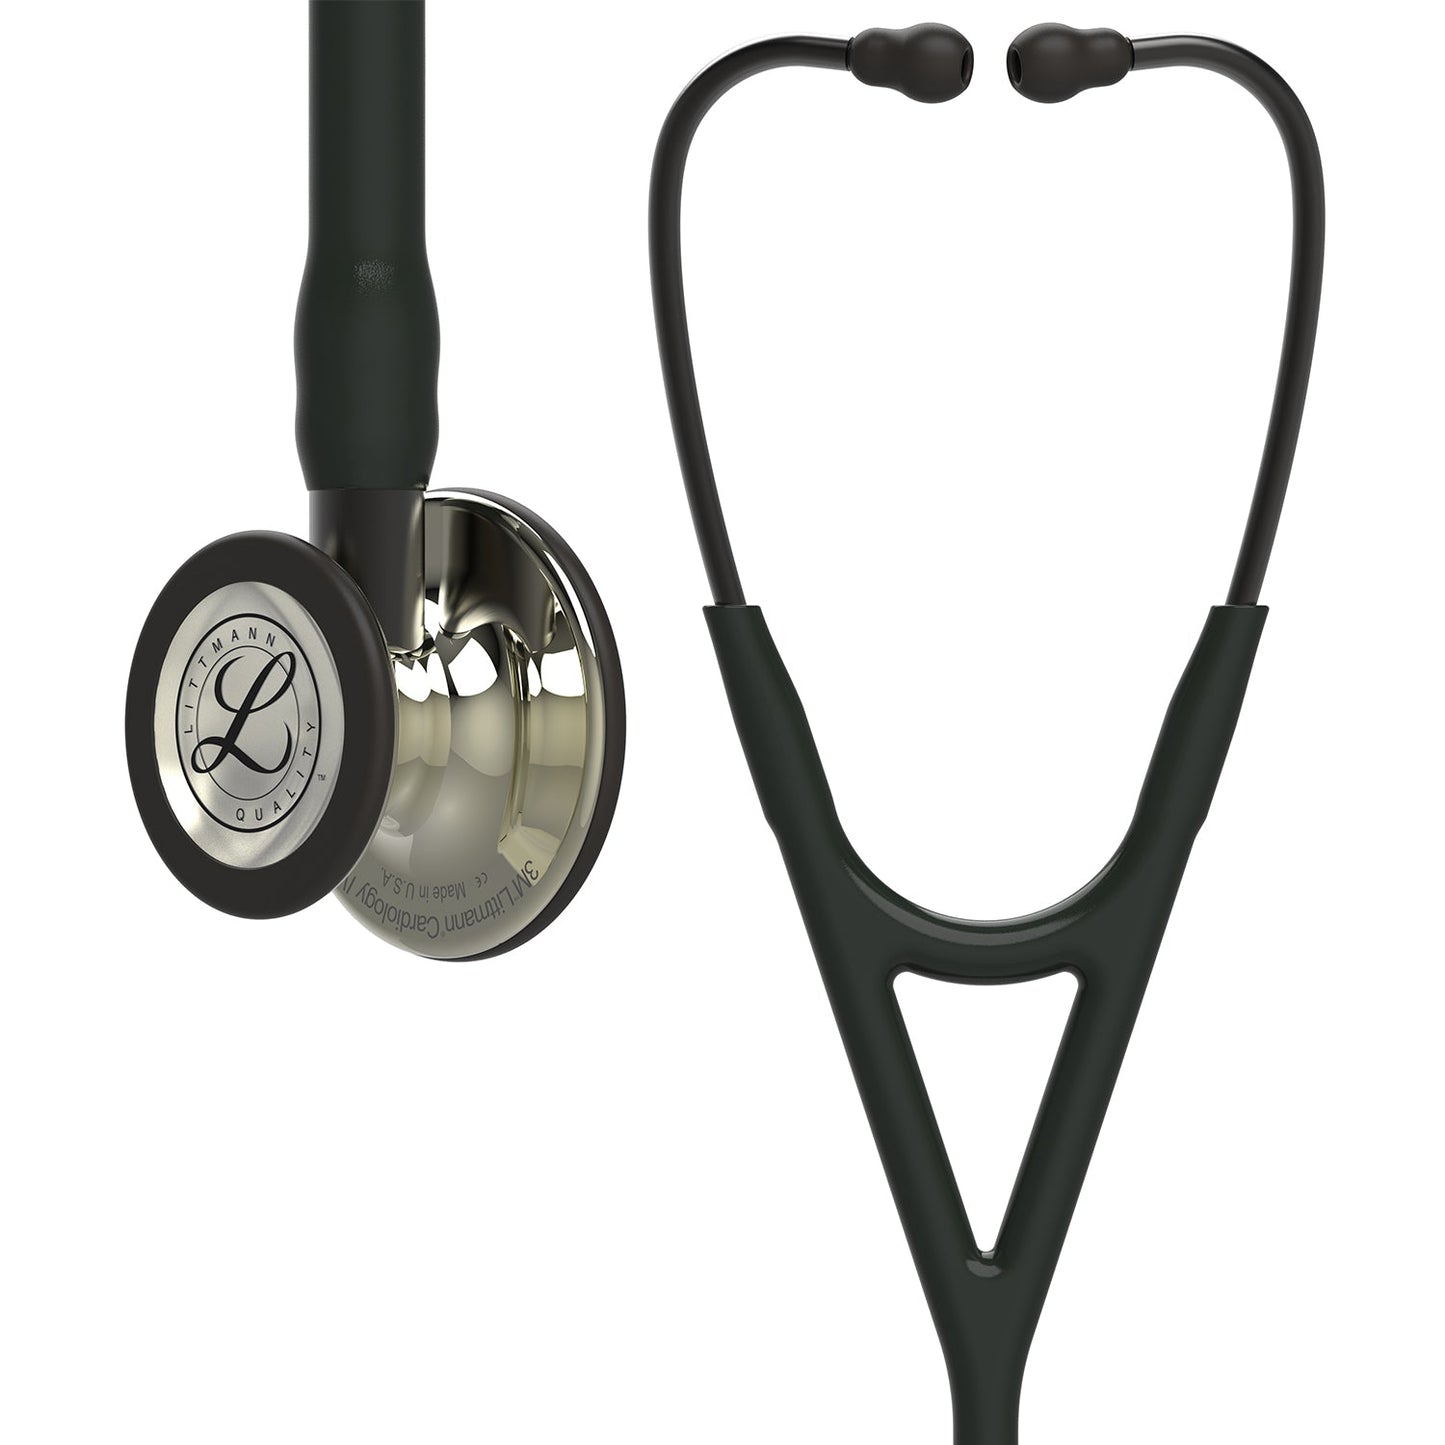 3M™ Littmann® Cardiology IV™ Stethoskop für die Diagnose, 6179, champagnerfarbenes Bruststück, schwarzer Schlauch, Schlauchanschluss und Ohrbügel in Rauchfarben, 69 cm